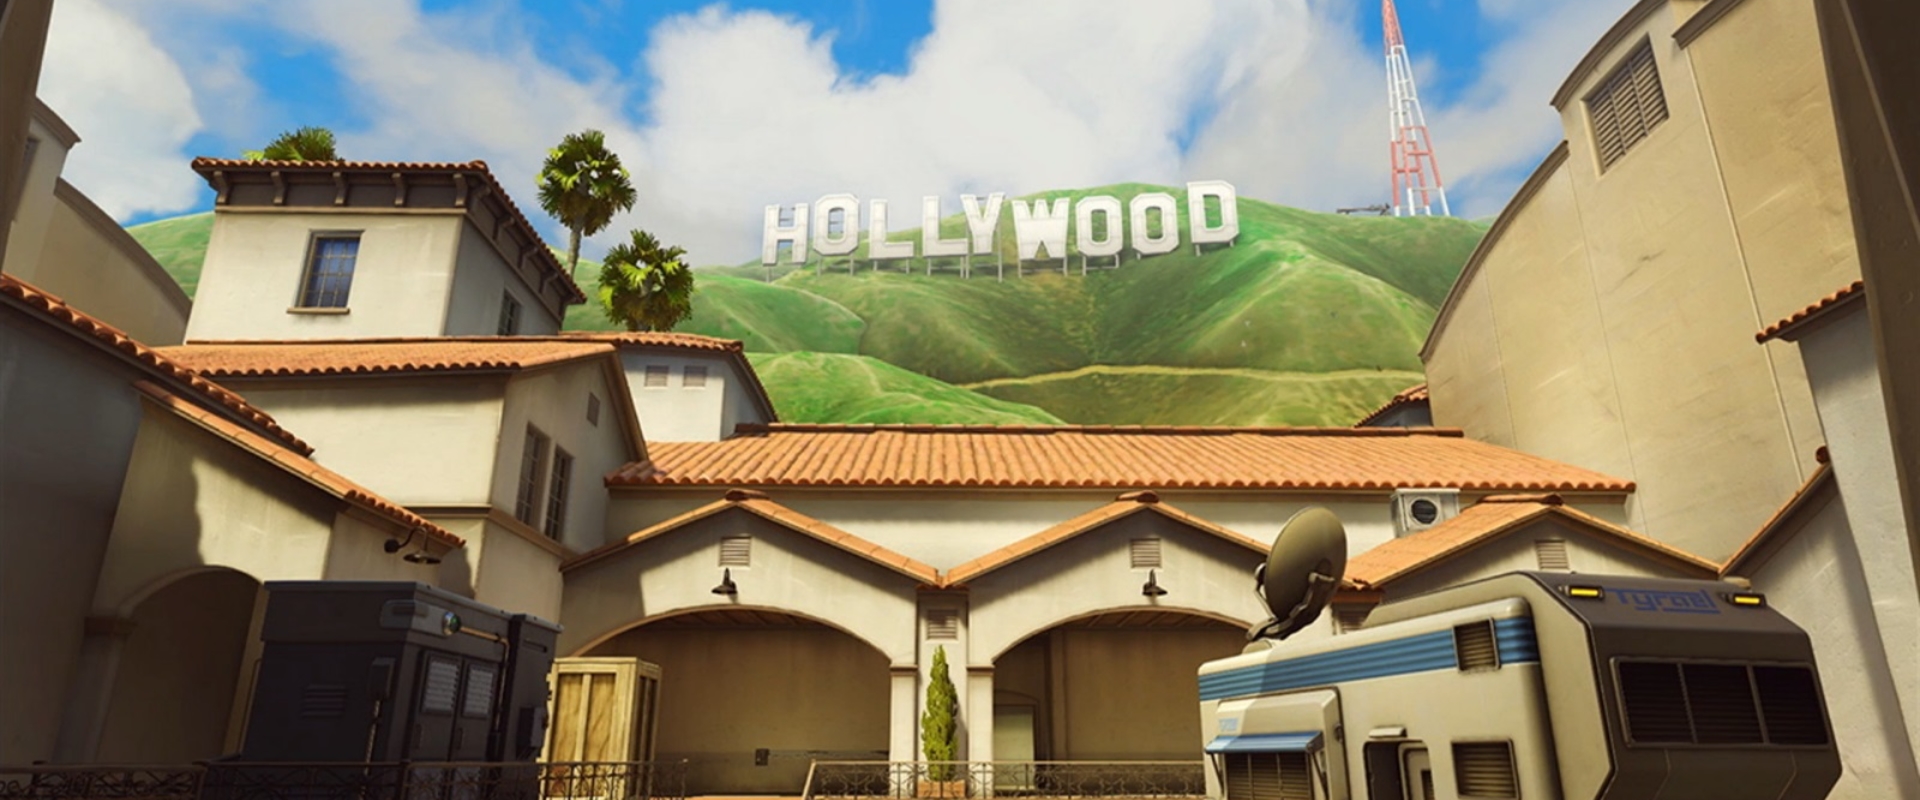 Hollywood Hammers-ként folytatják tomzeY-ék, akár az Overwatch League is szóba jöhet